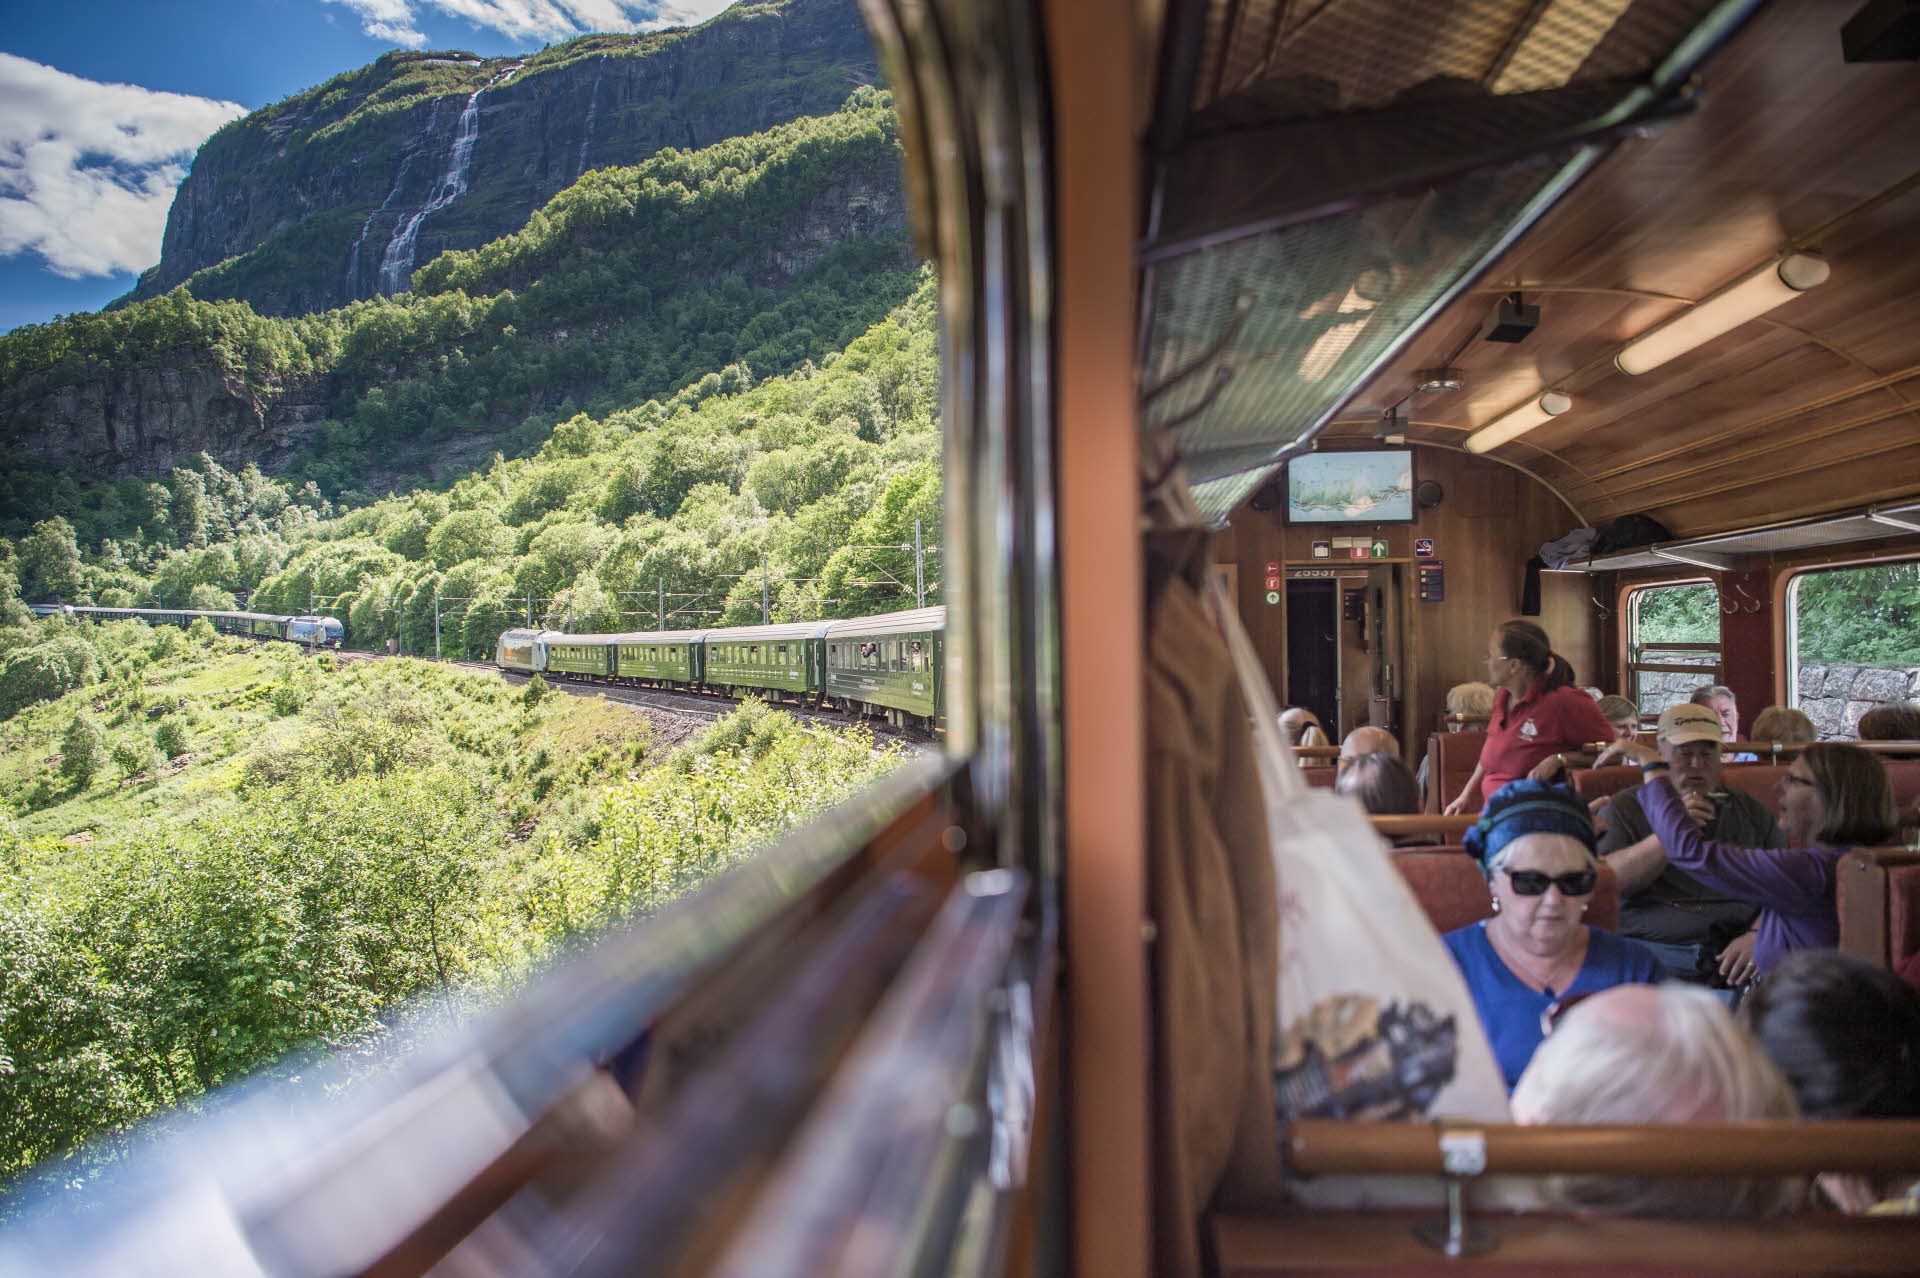 Deux trains se rencontrent dans la vallée de Flåm – pris d’une fenêtre sur le chemin de fer de Flåm, avec des touristes dans le wagon